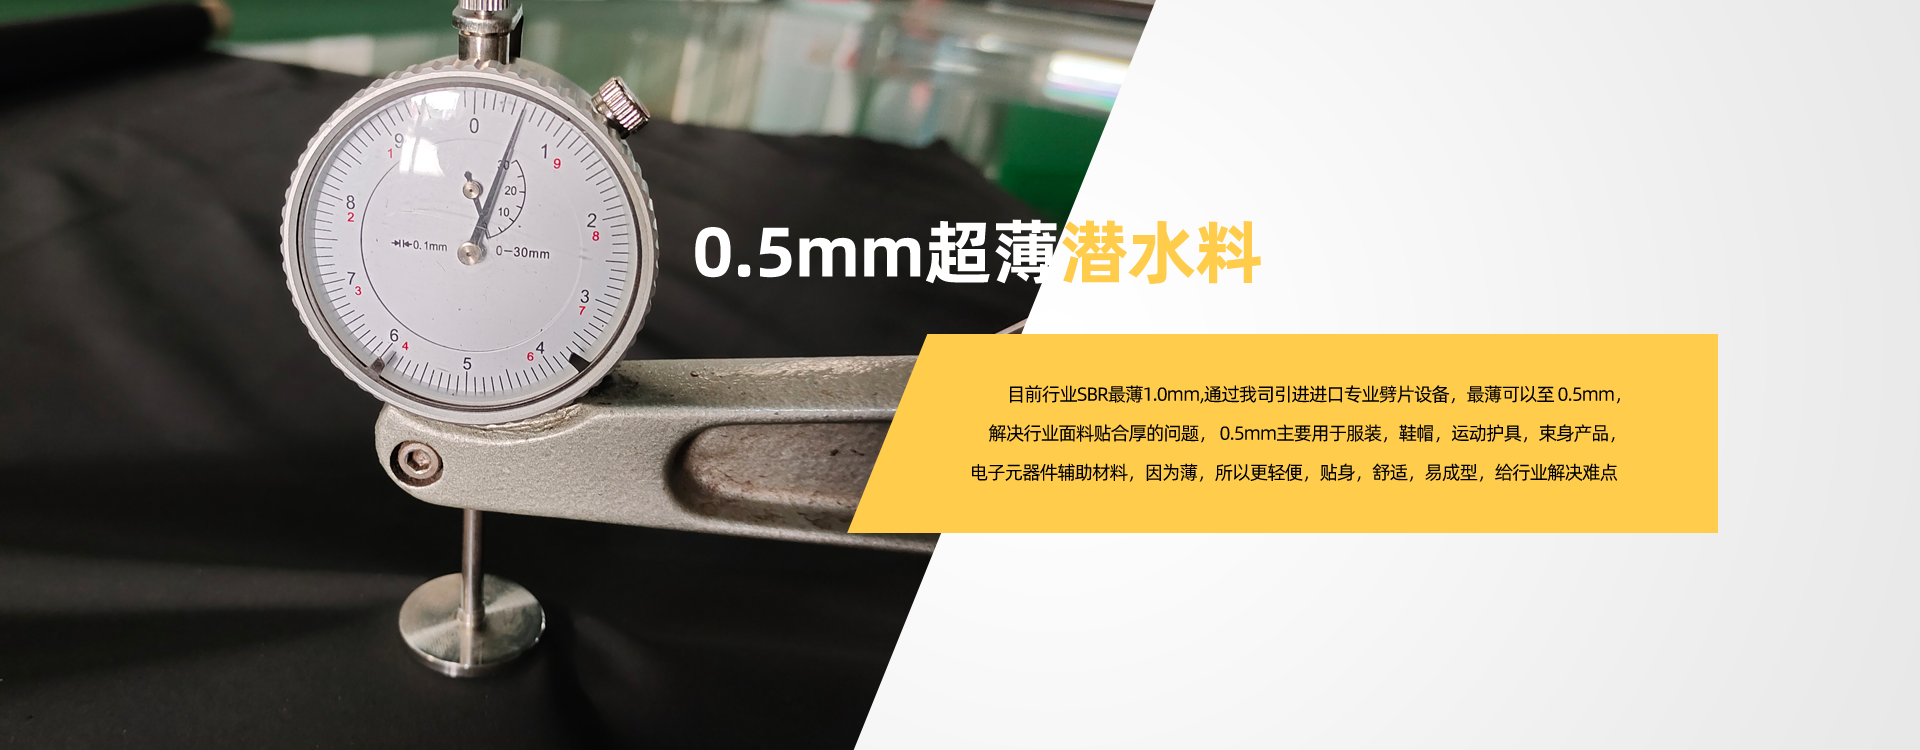 雅欣-0.5mm超薄潜水料